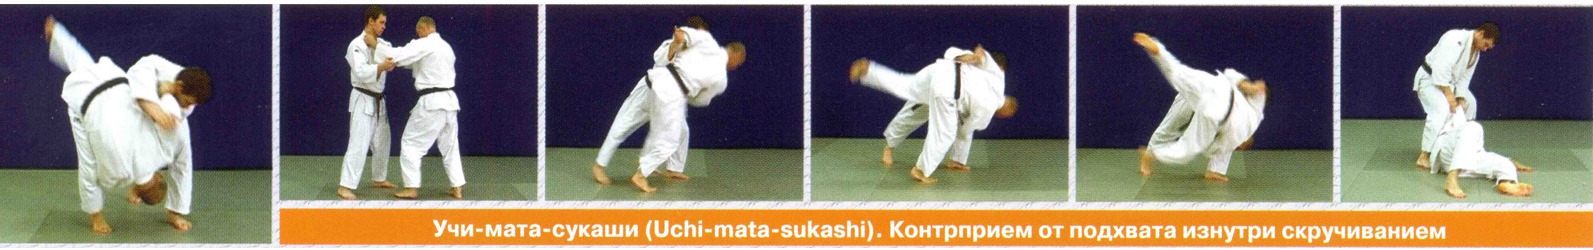 Учи-мата-сукаши